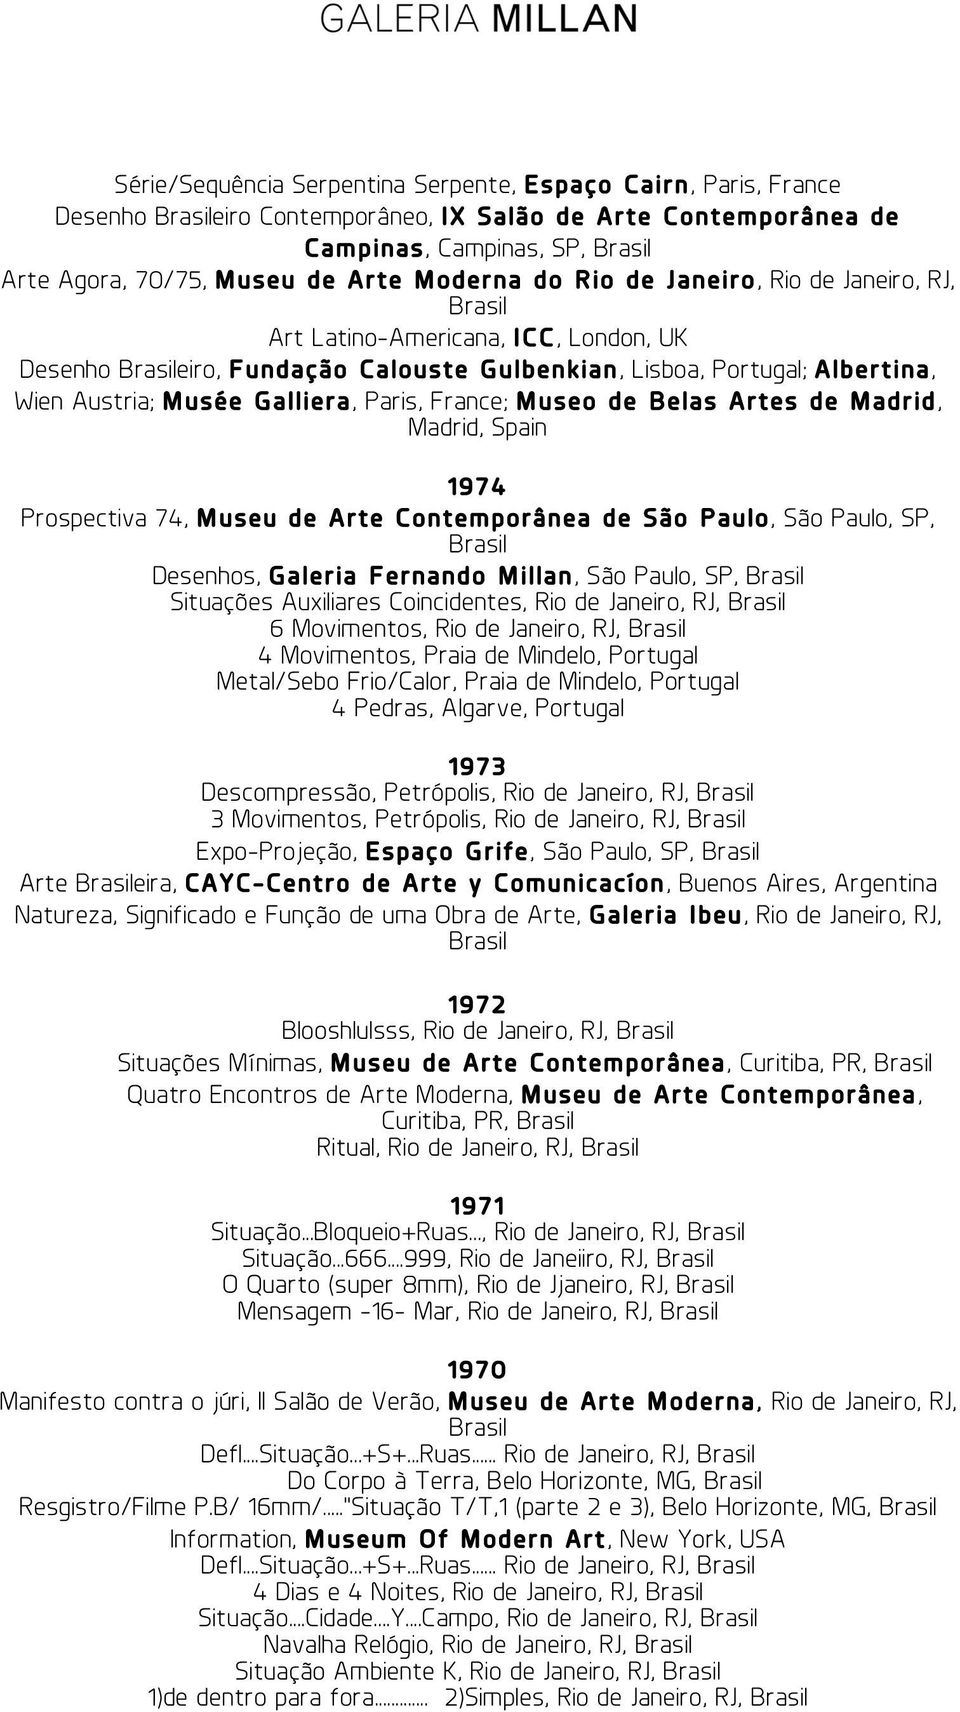 Belas Artes de Madrid, Madrid, Spain 1974 Prospectiva 74, Museu de Arte Contemporânea de São Paulo, São Paulo, SP, Desenhos, Galeria Fernando Millan, São Paulo, SP, Situações Auxiliares Coincidentes,